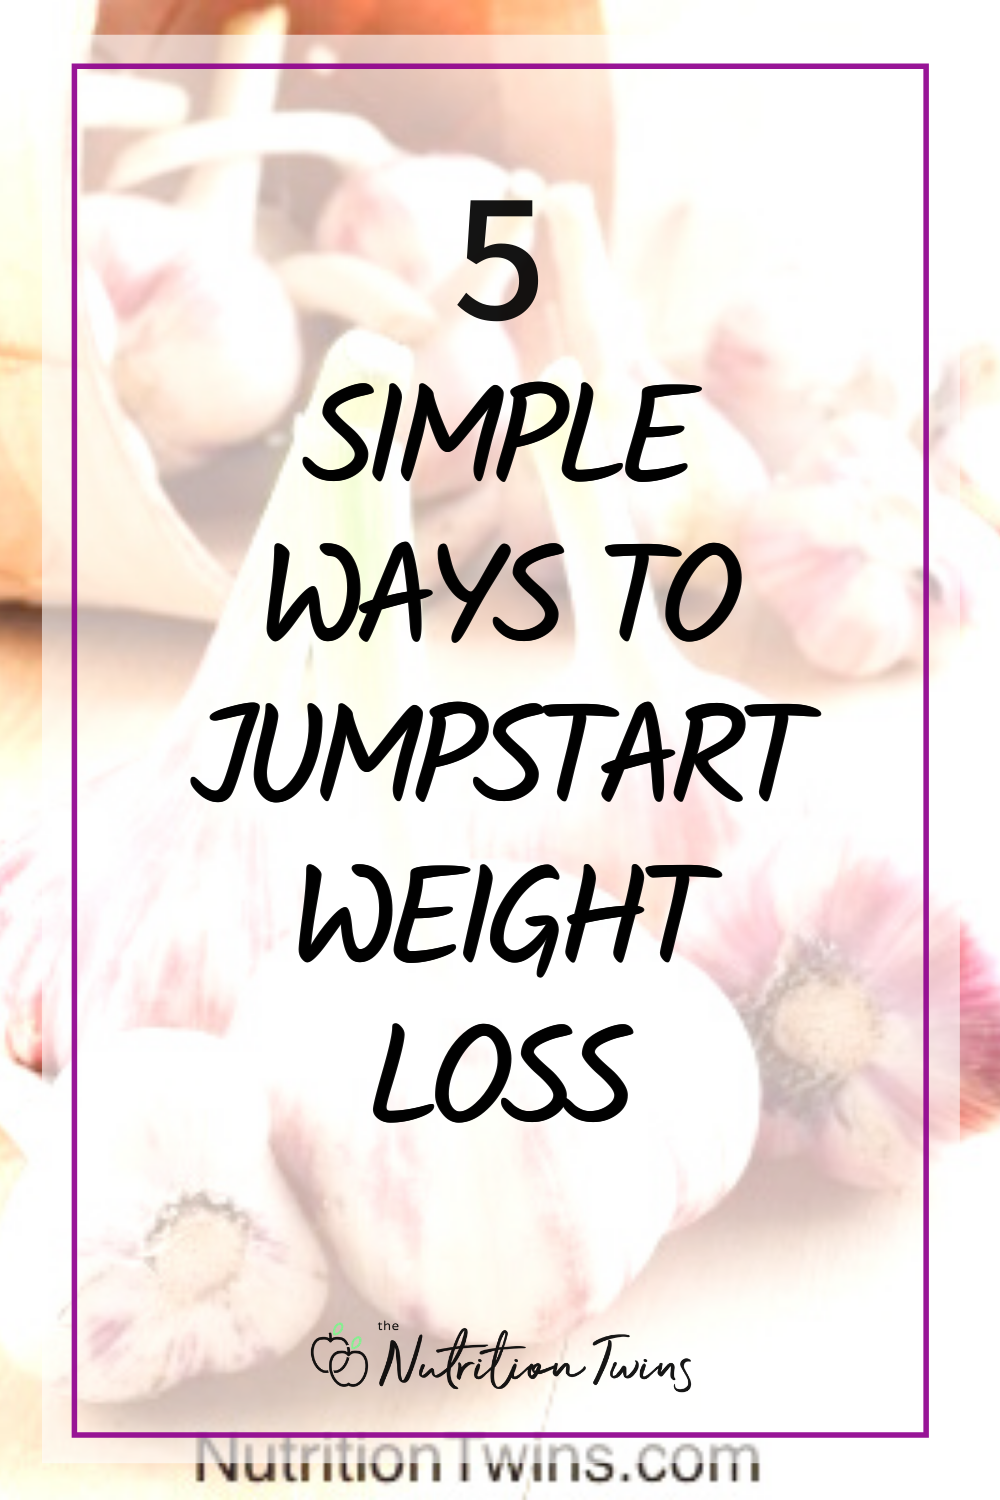 5 simple ways to jumpstart weight loss